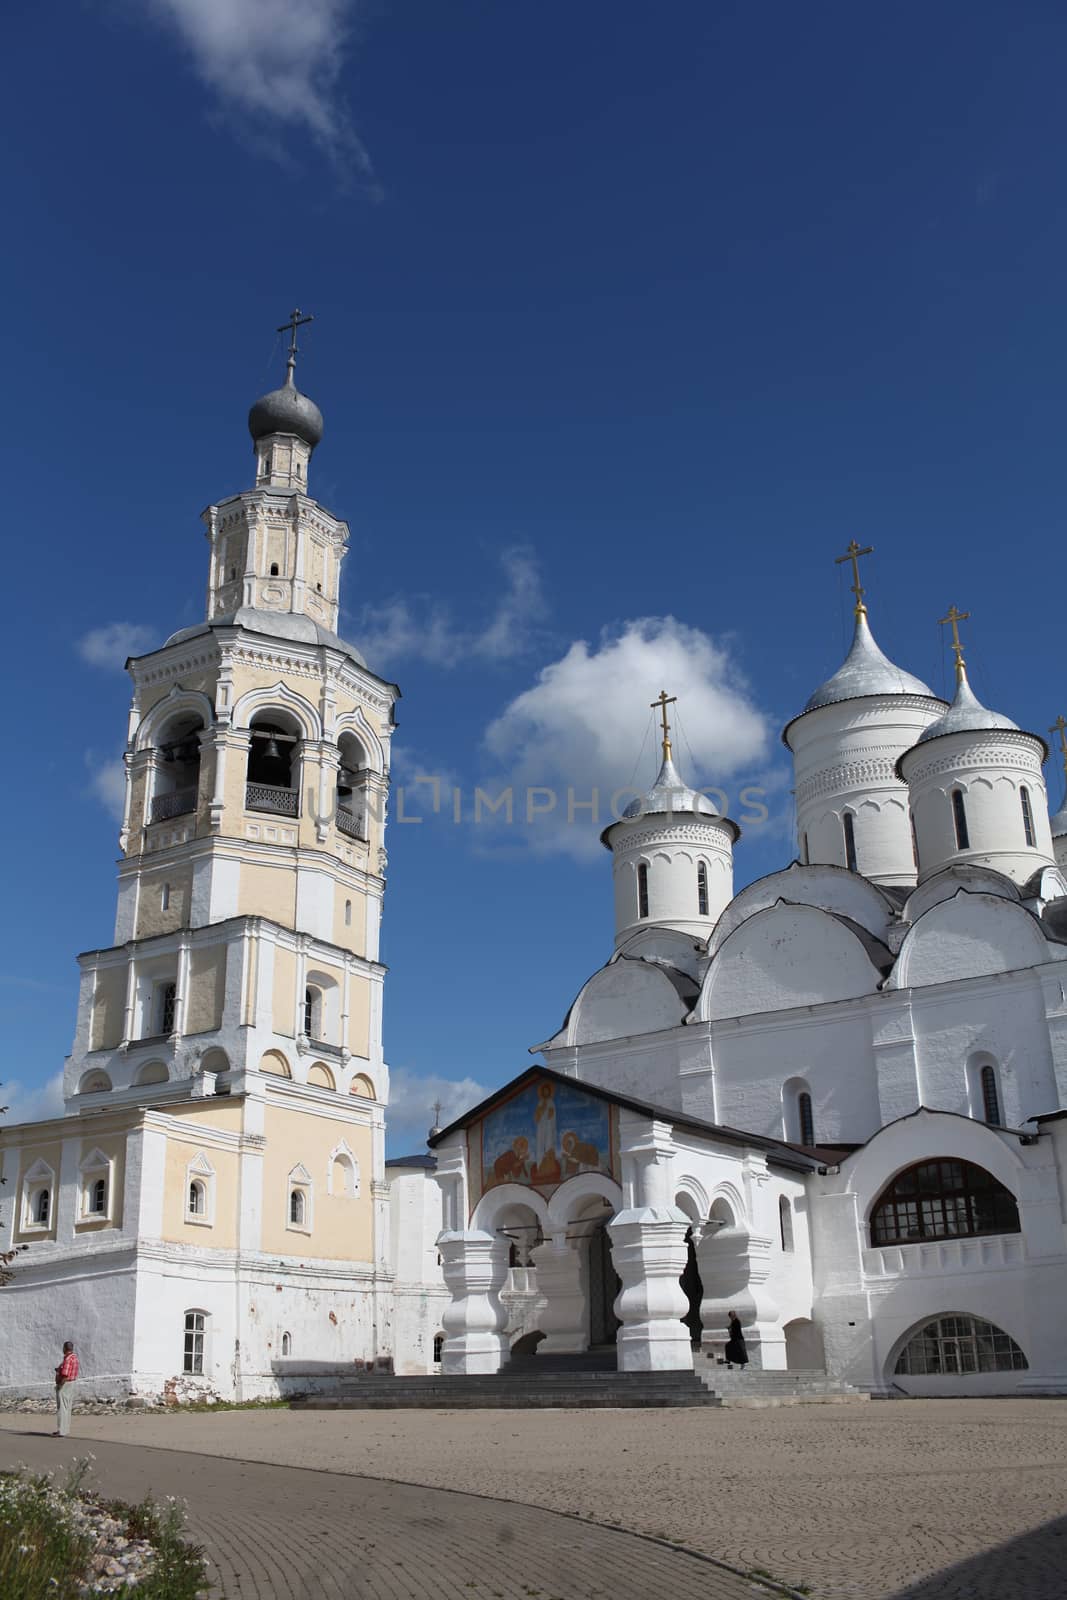 View of Spaso-Prilutsky Christianity monastery by mrivserg